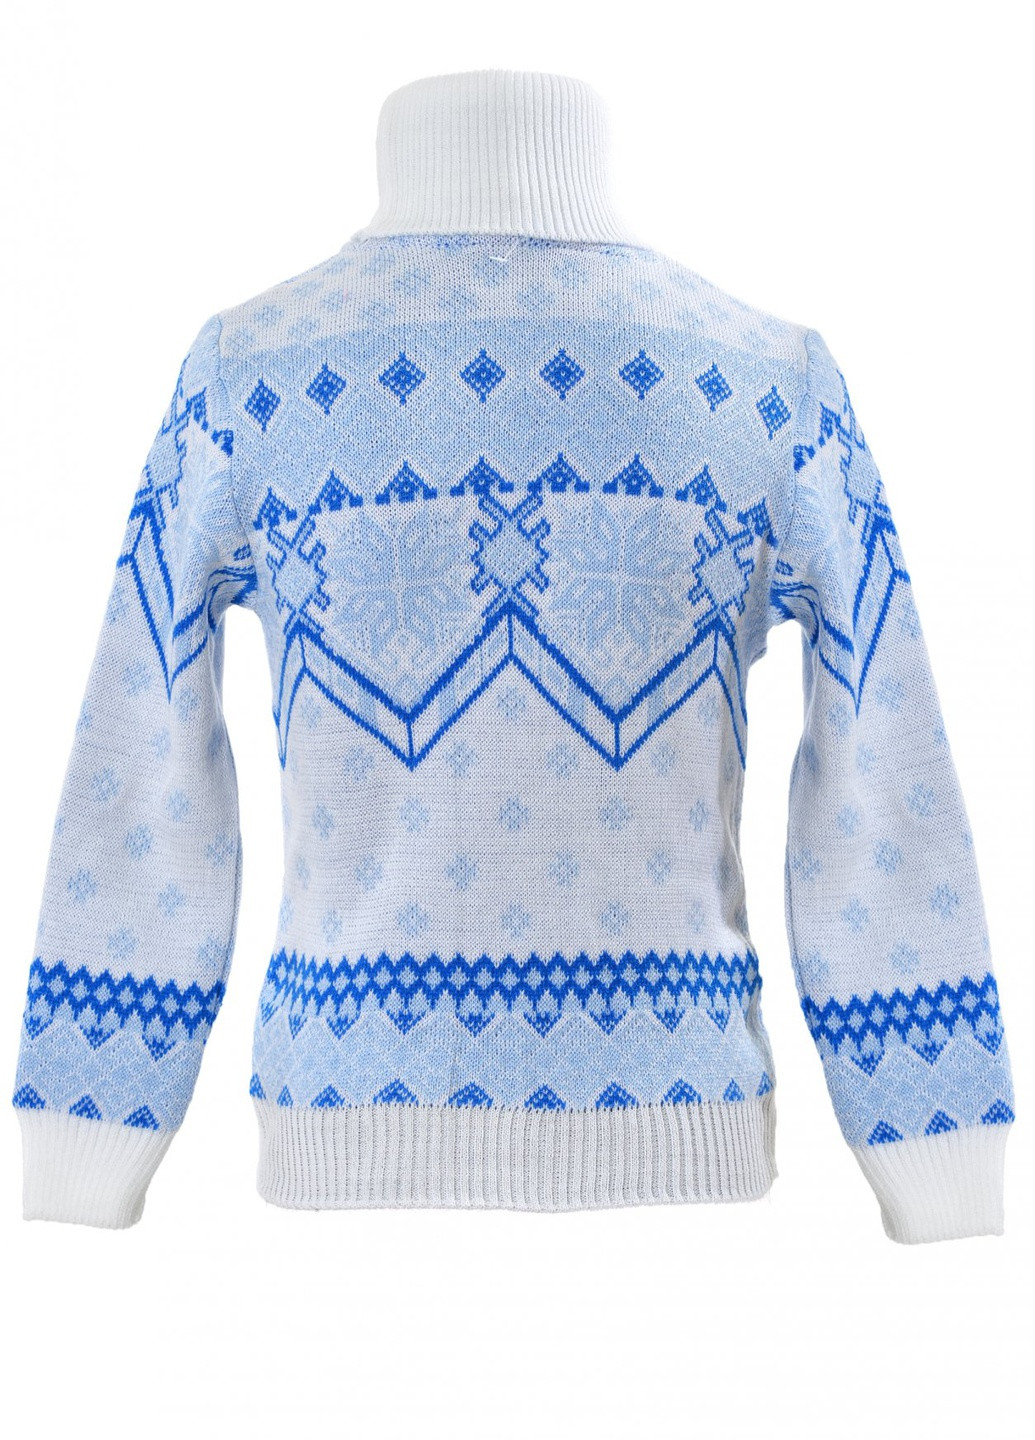 Синій зимовий светри светр сніжинки (снежинки) Lemanta